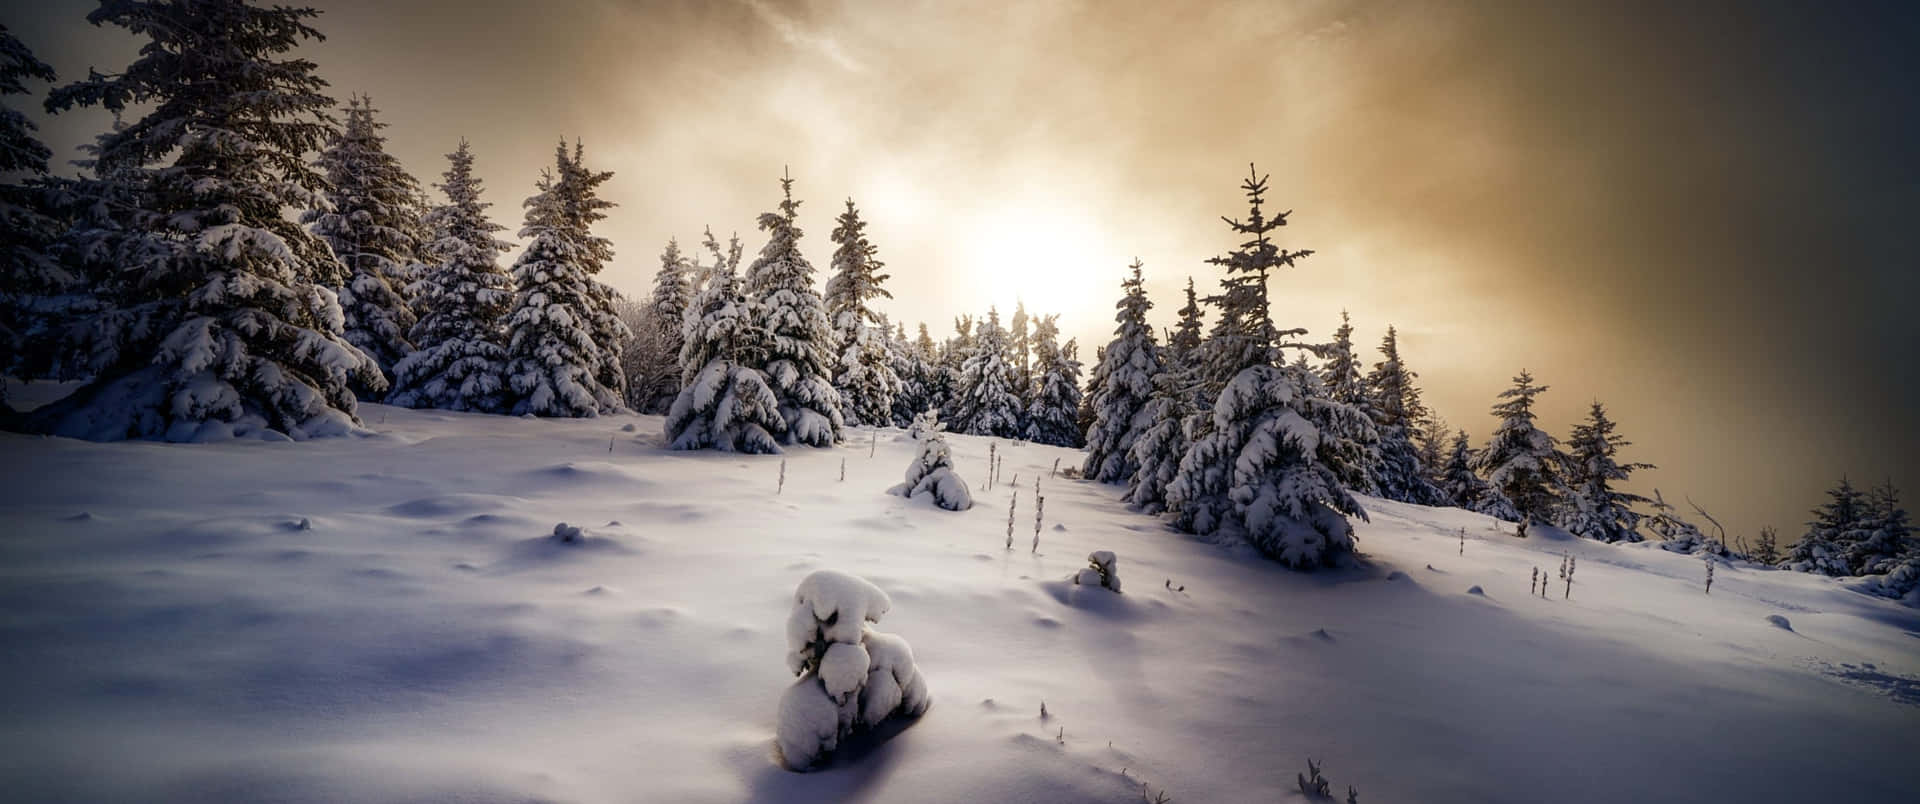 Disfrutade La Exuberante Belleza De Un Paraíso Invernal. Fondo de pantalla